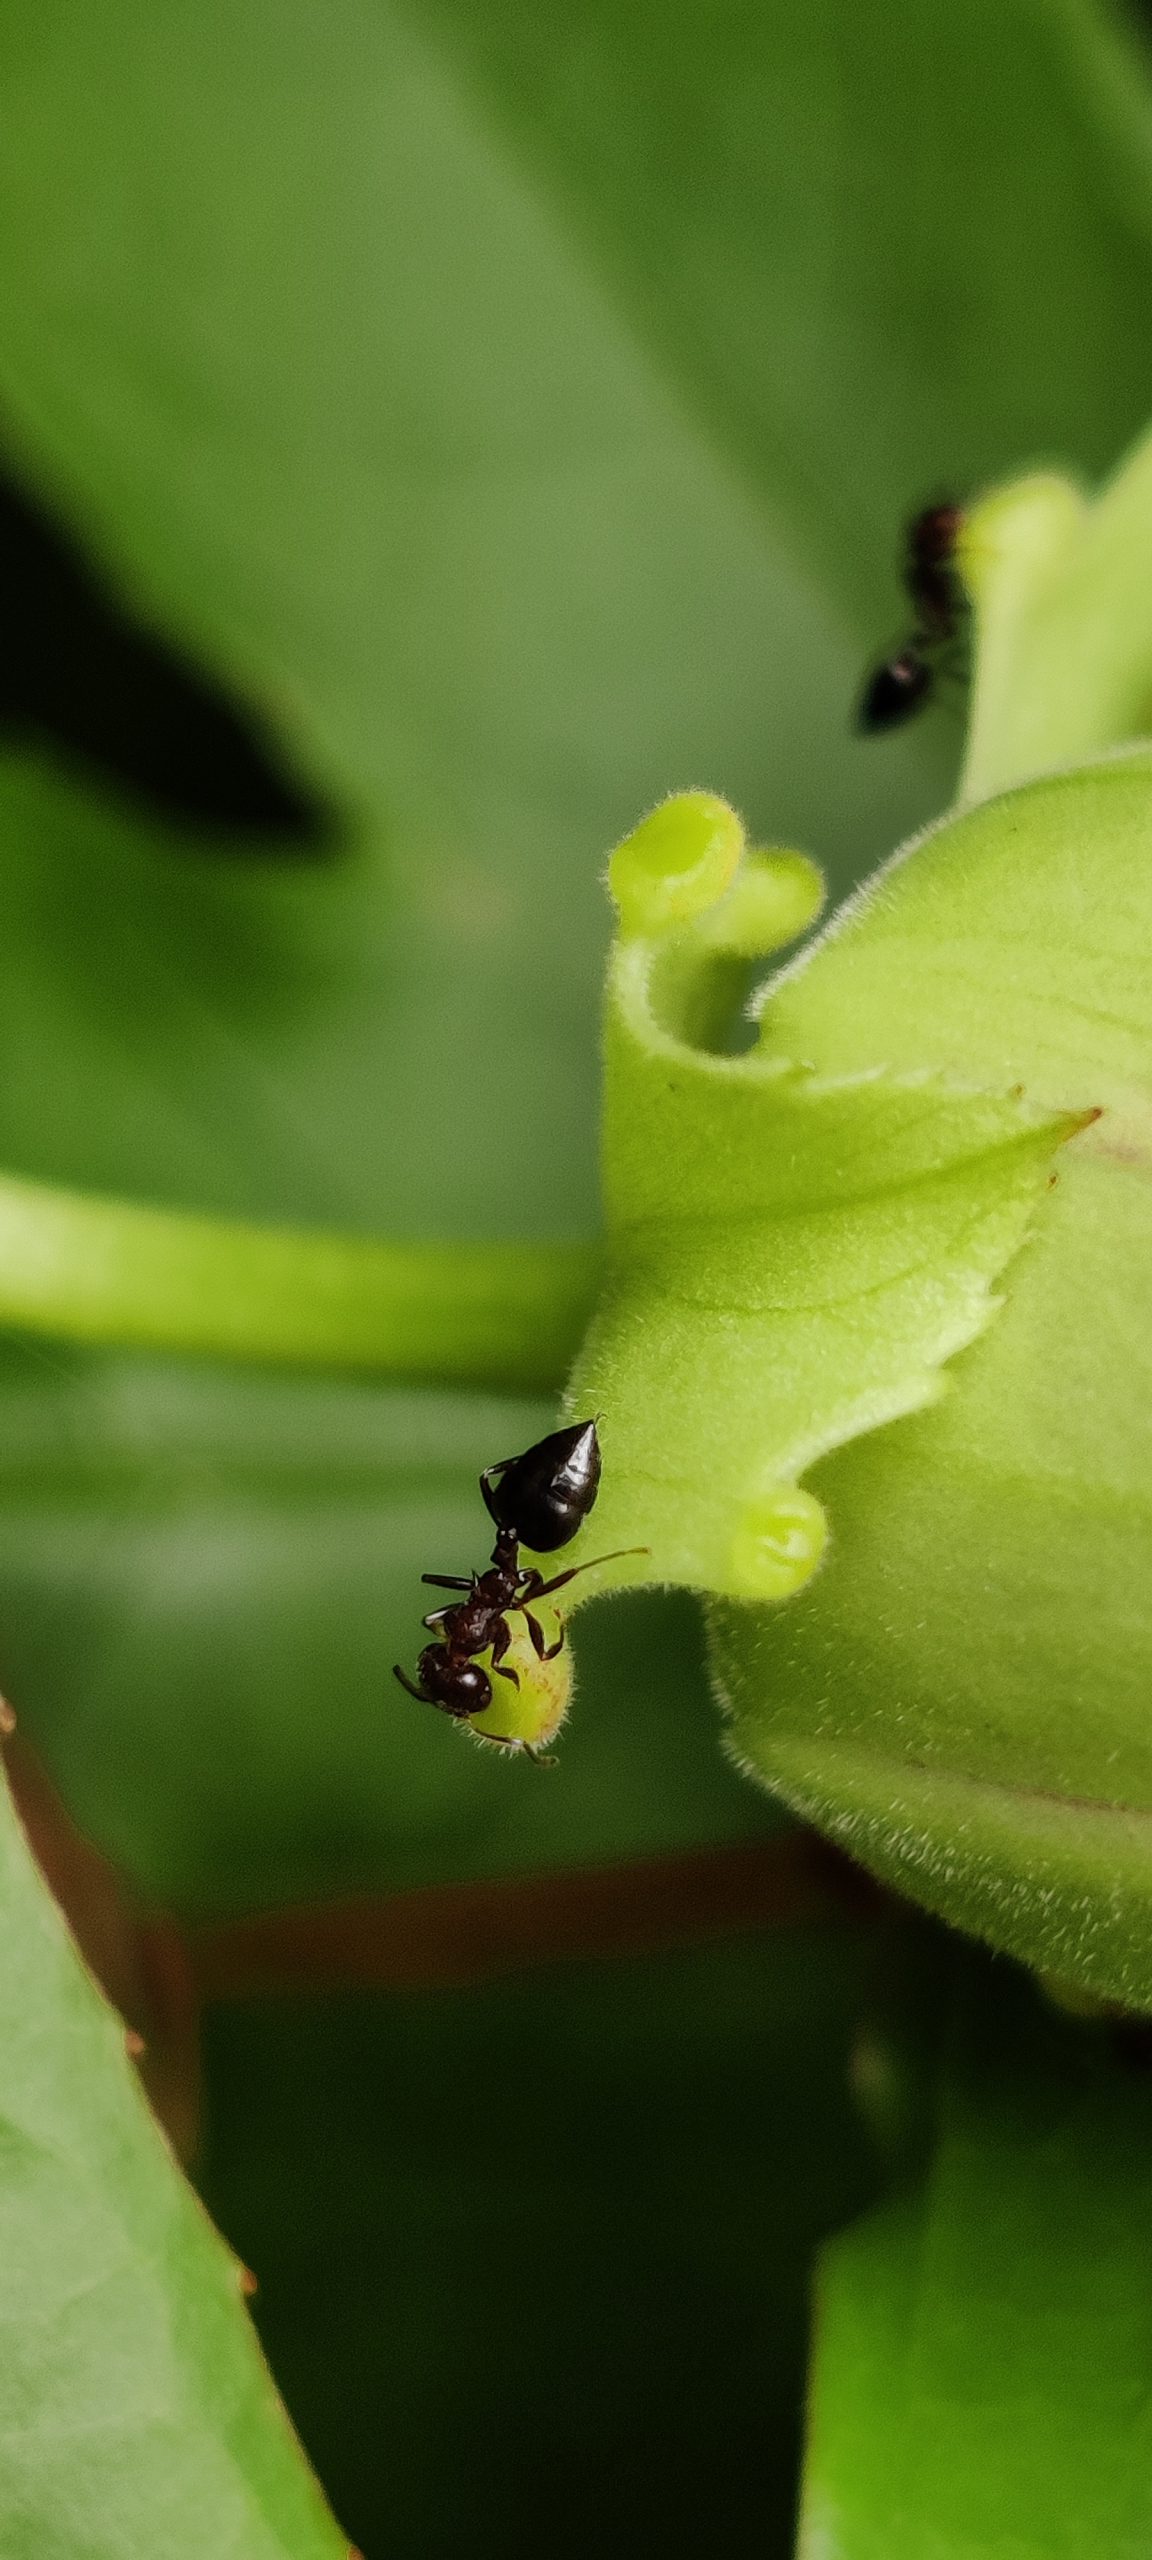 Crematogaster scutellaris ant